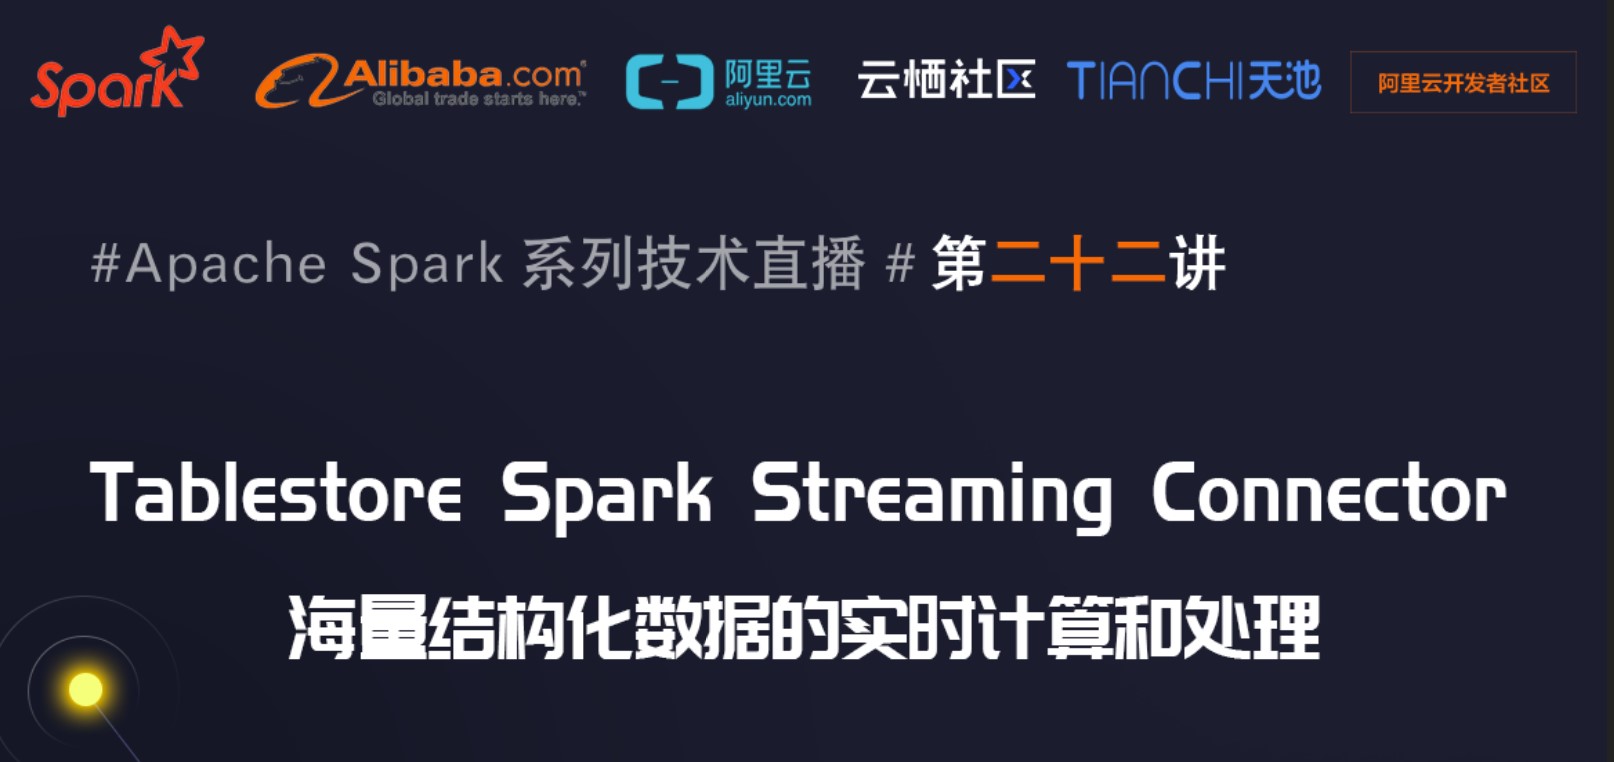 10月17日Spark社区直播【Tablestore Spark Streaming Connector -- 海量结构化数据的实时计算和处理】